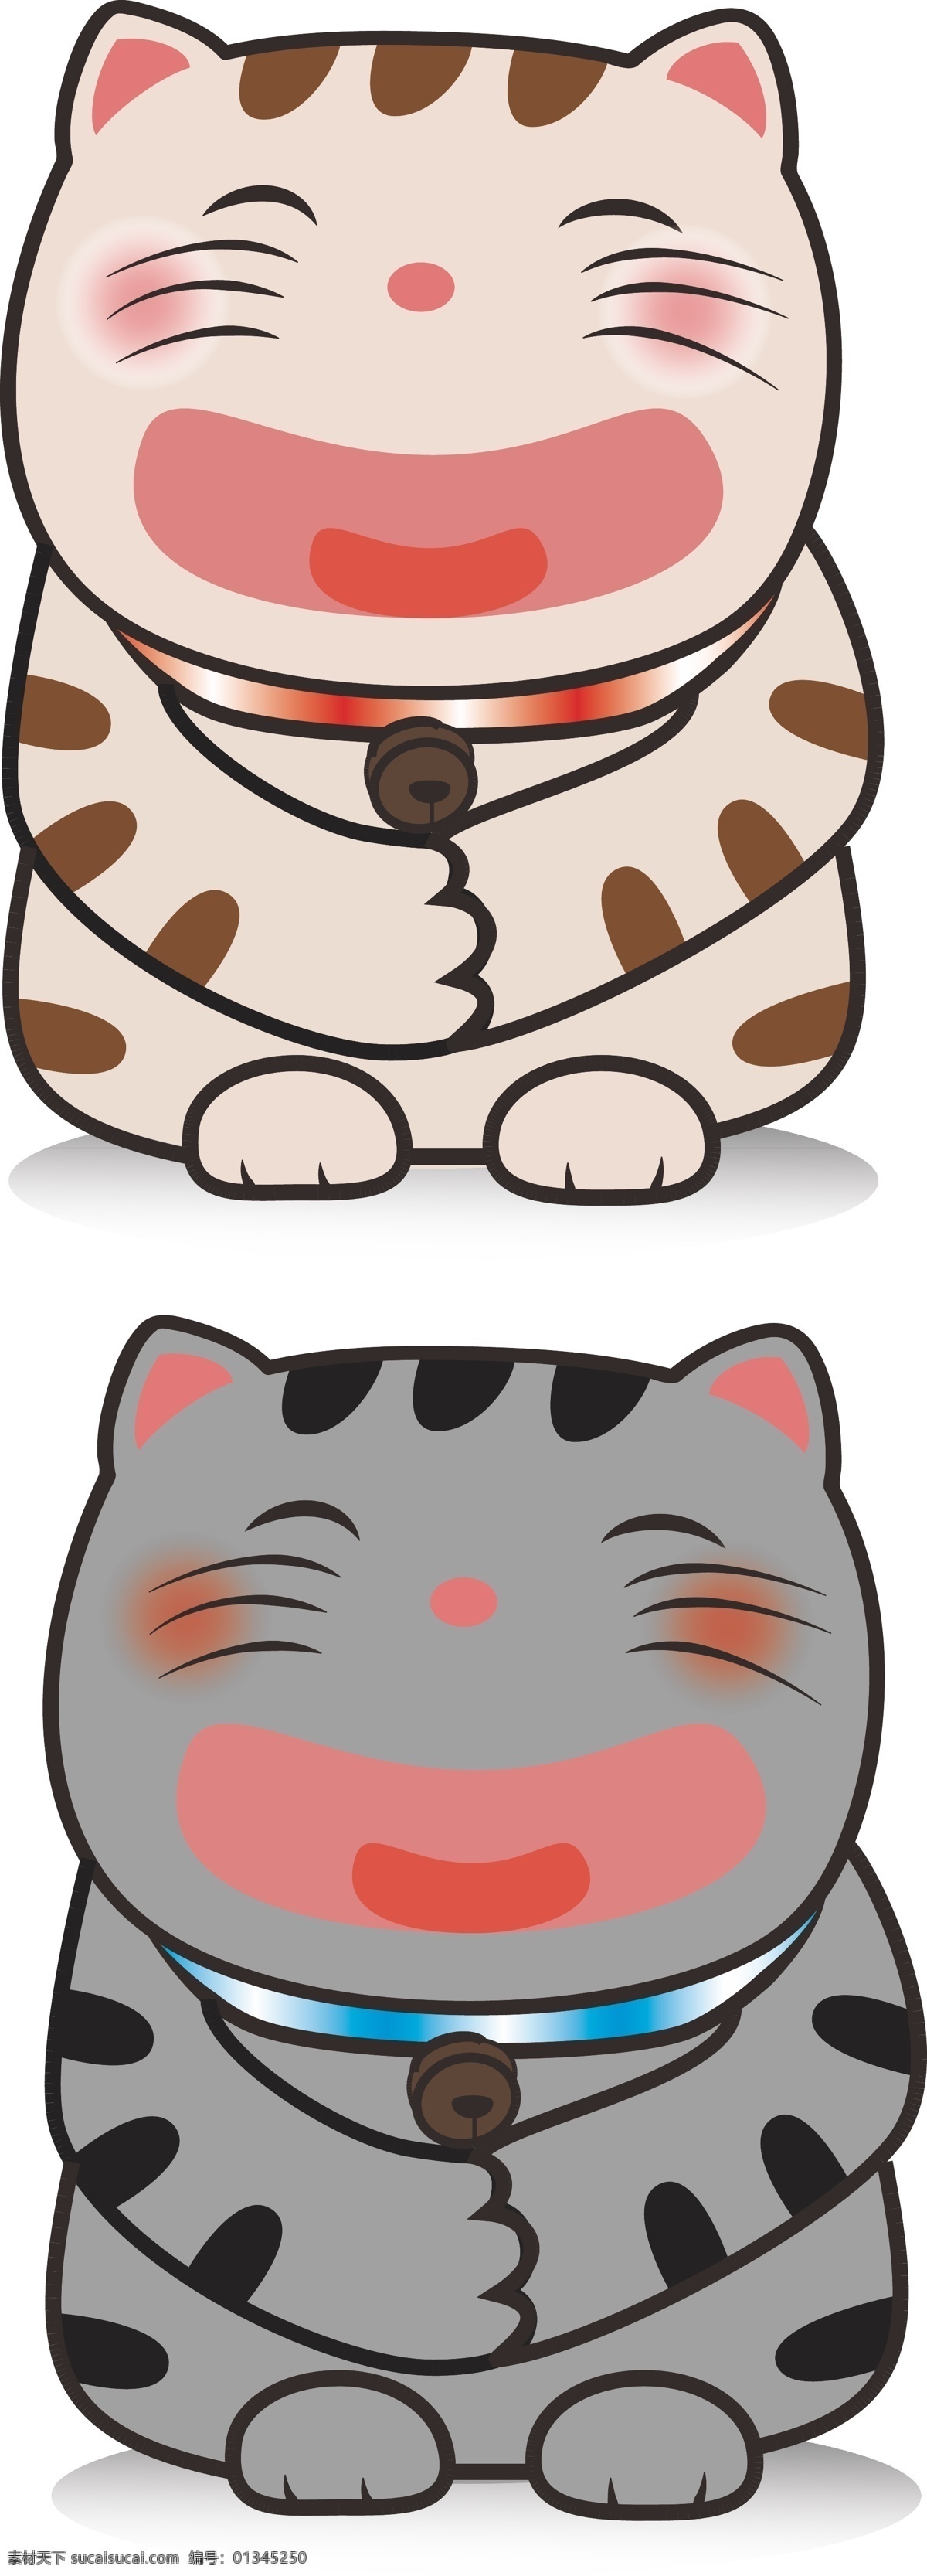 胖胖招财猫 招财猫 可爱 春节 猫咪 猫 卡通设计 矢量